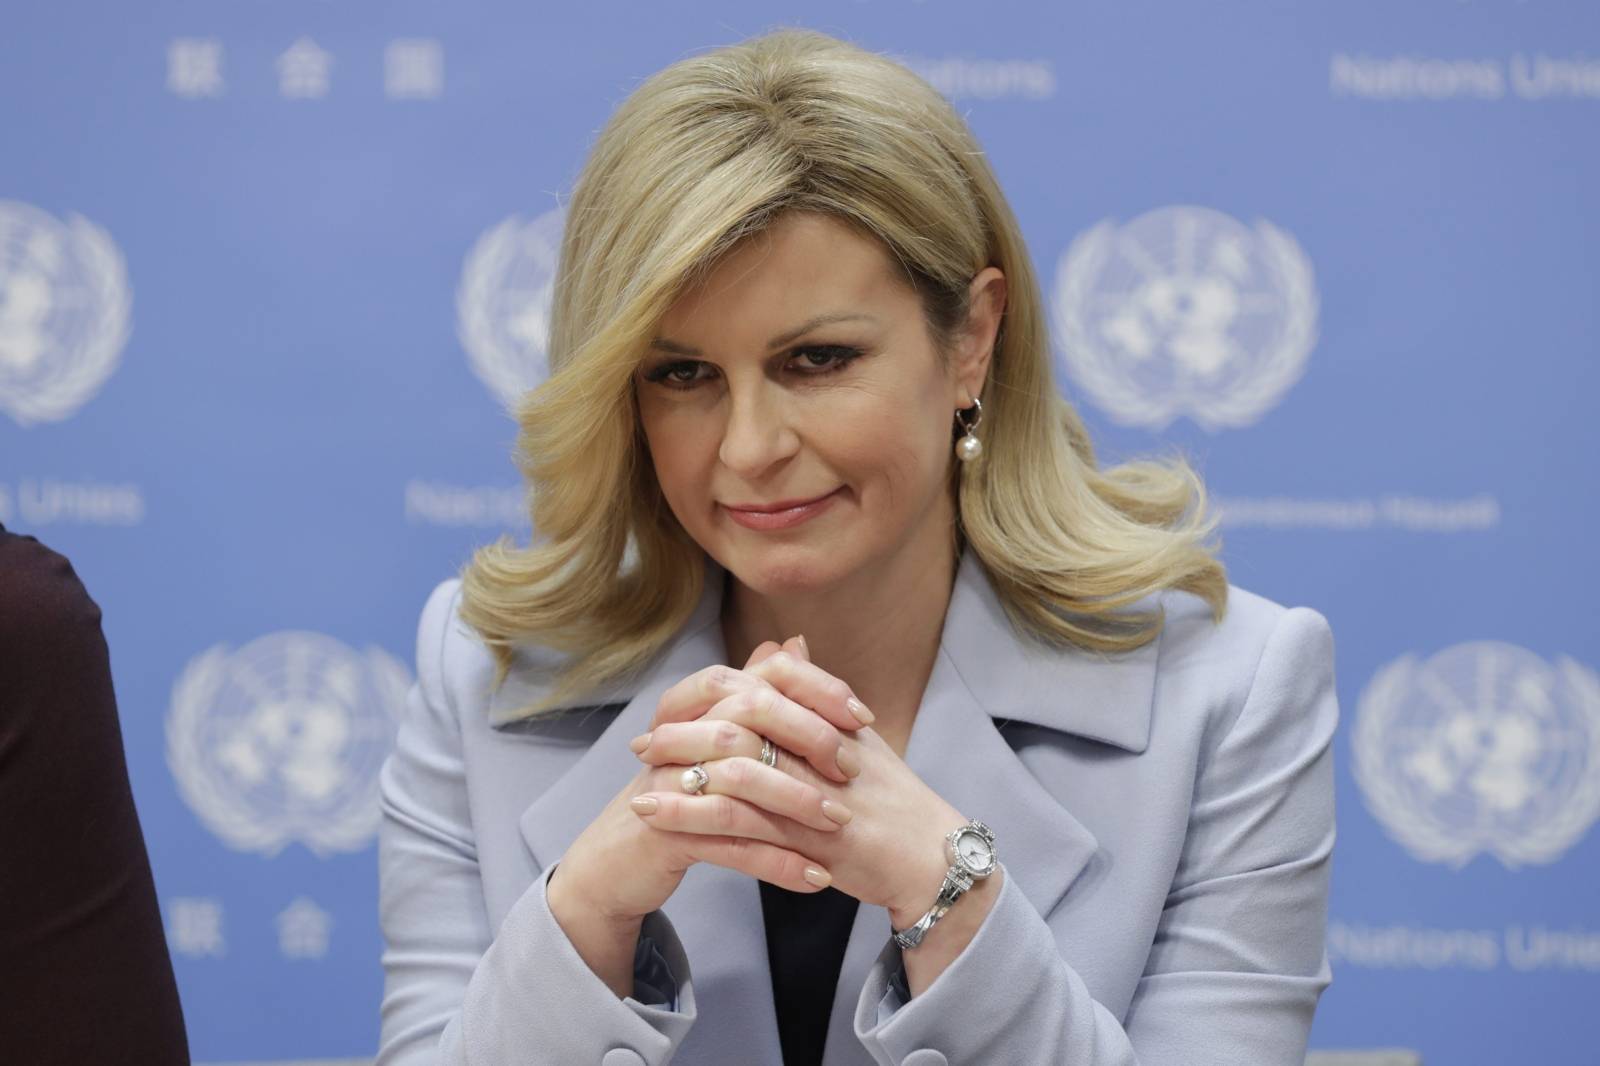 Presser by Kolinda Grabar Kitarovic President of Croatia